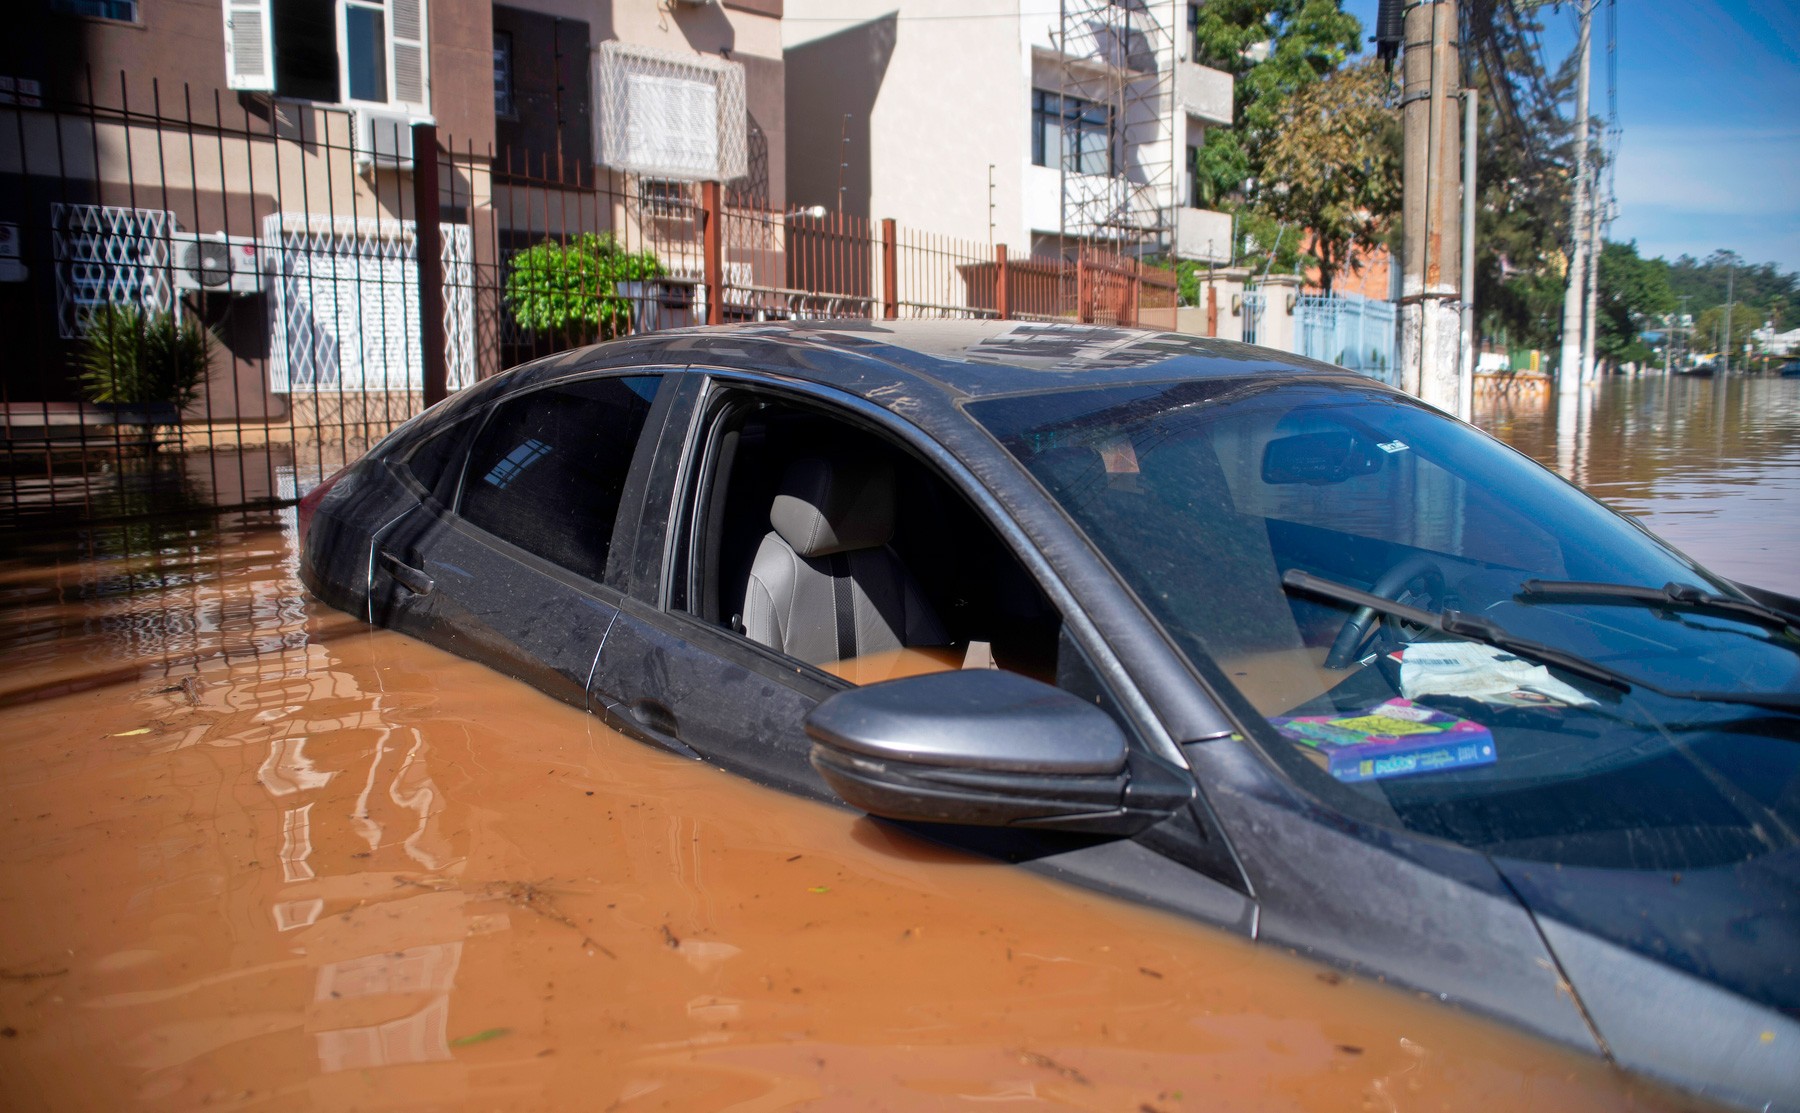 Seguro do carro cobre enchente? Veja como descobrir